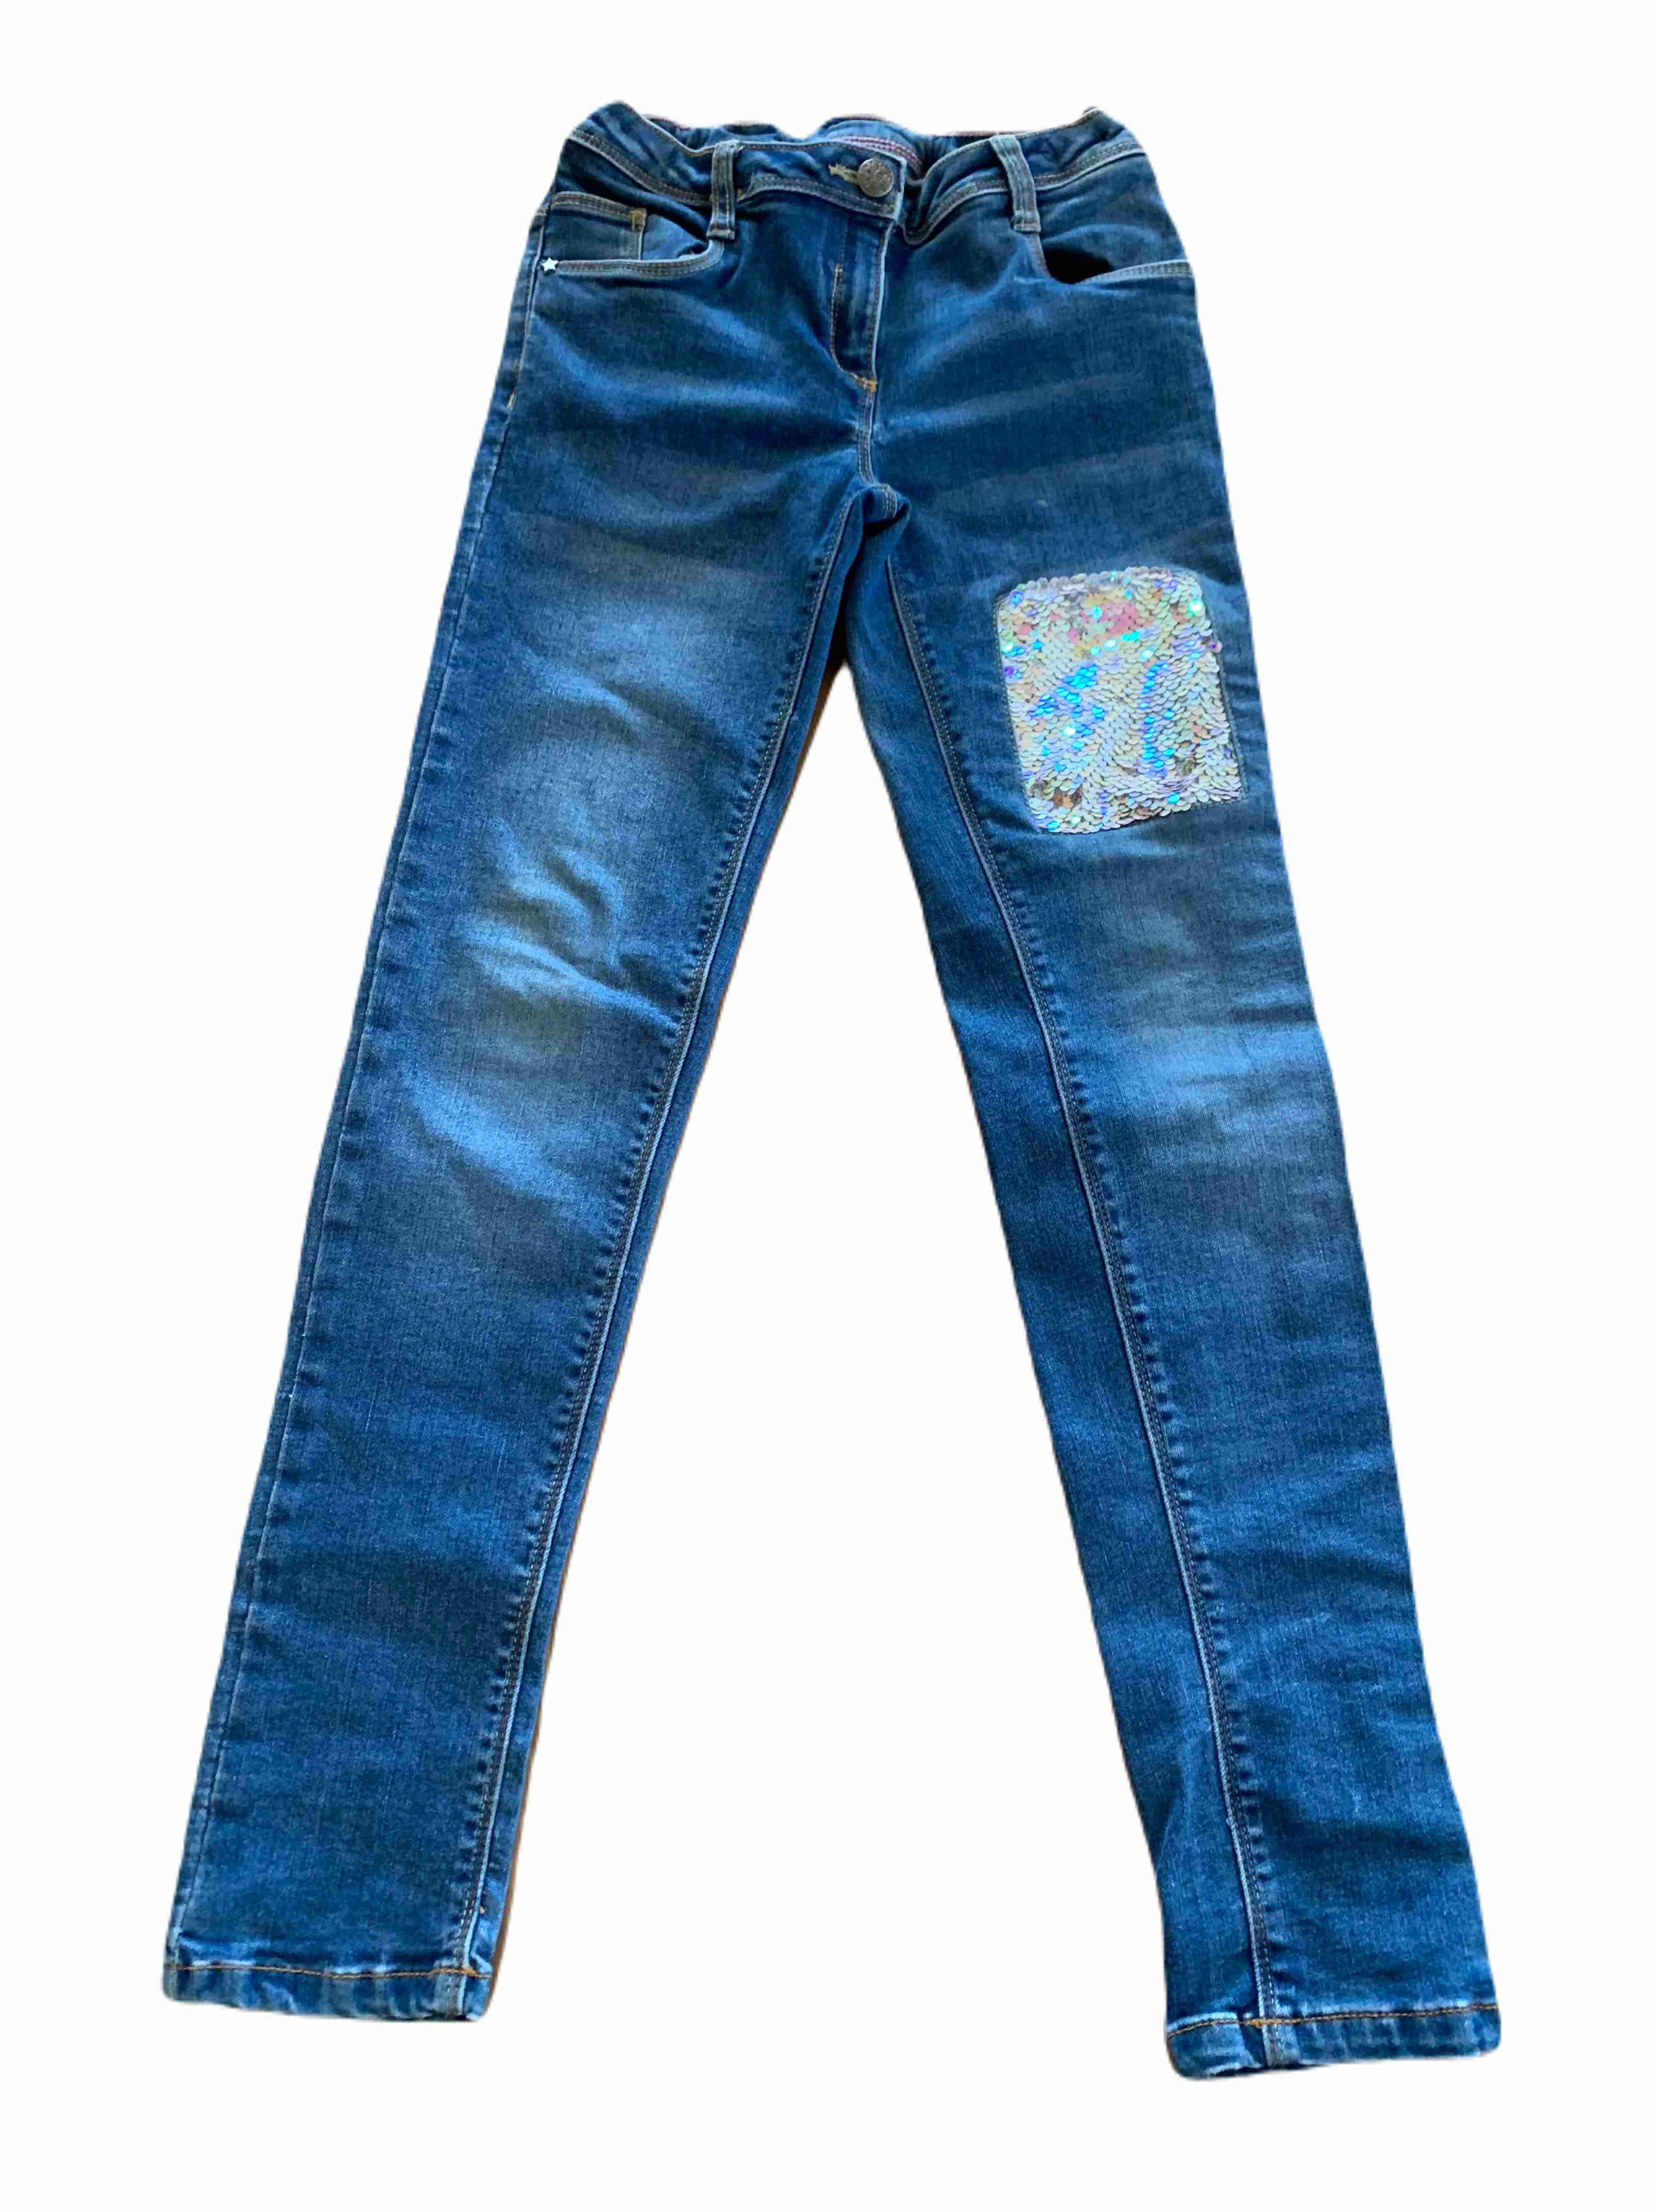 Dívčí džíny zdobené flitry 146